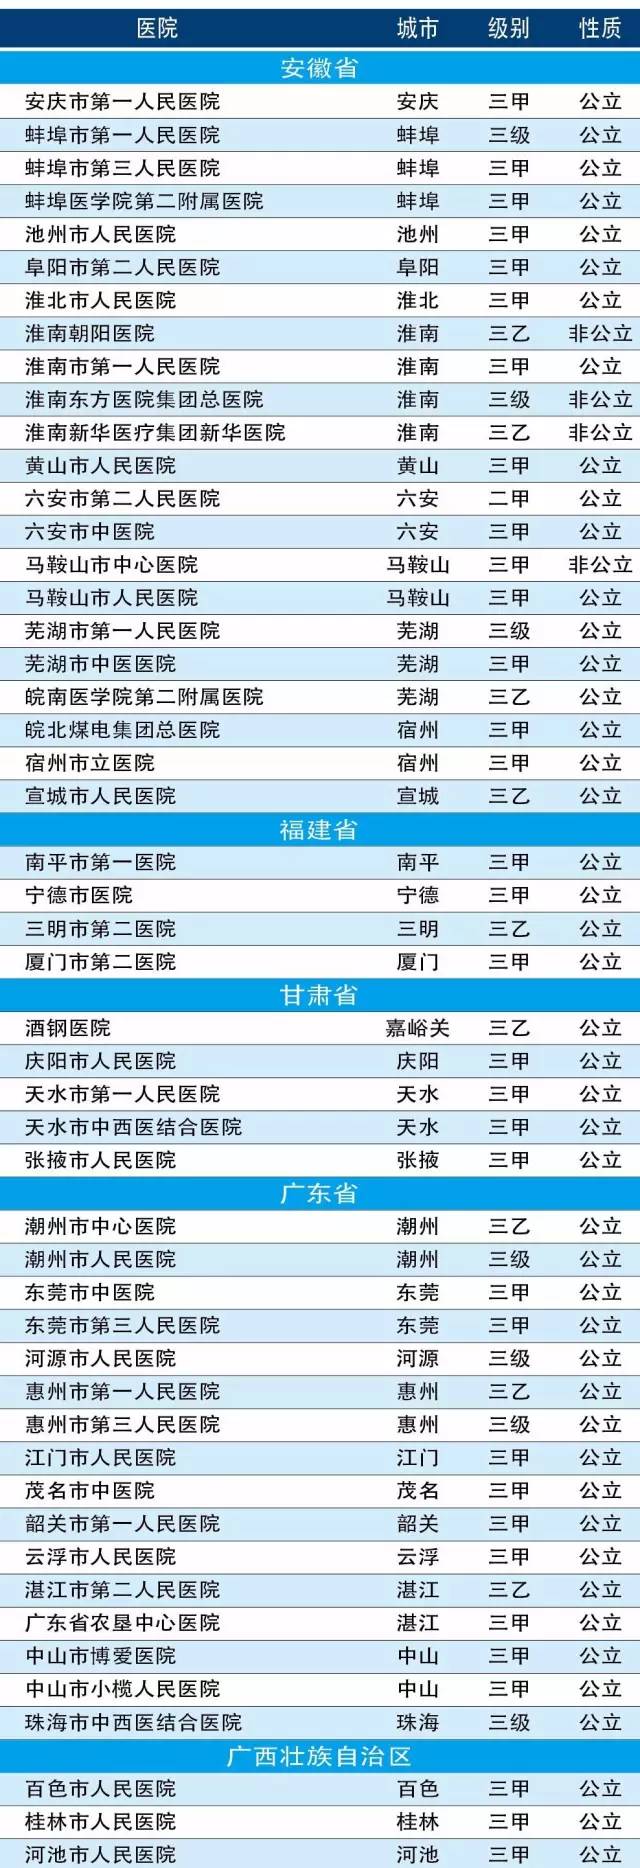 中国1700家医院最强排行榜:地级、县级、中医